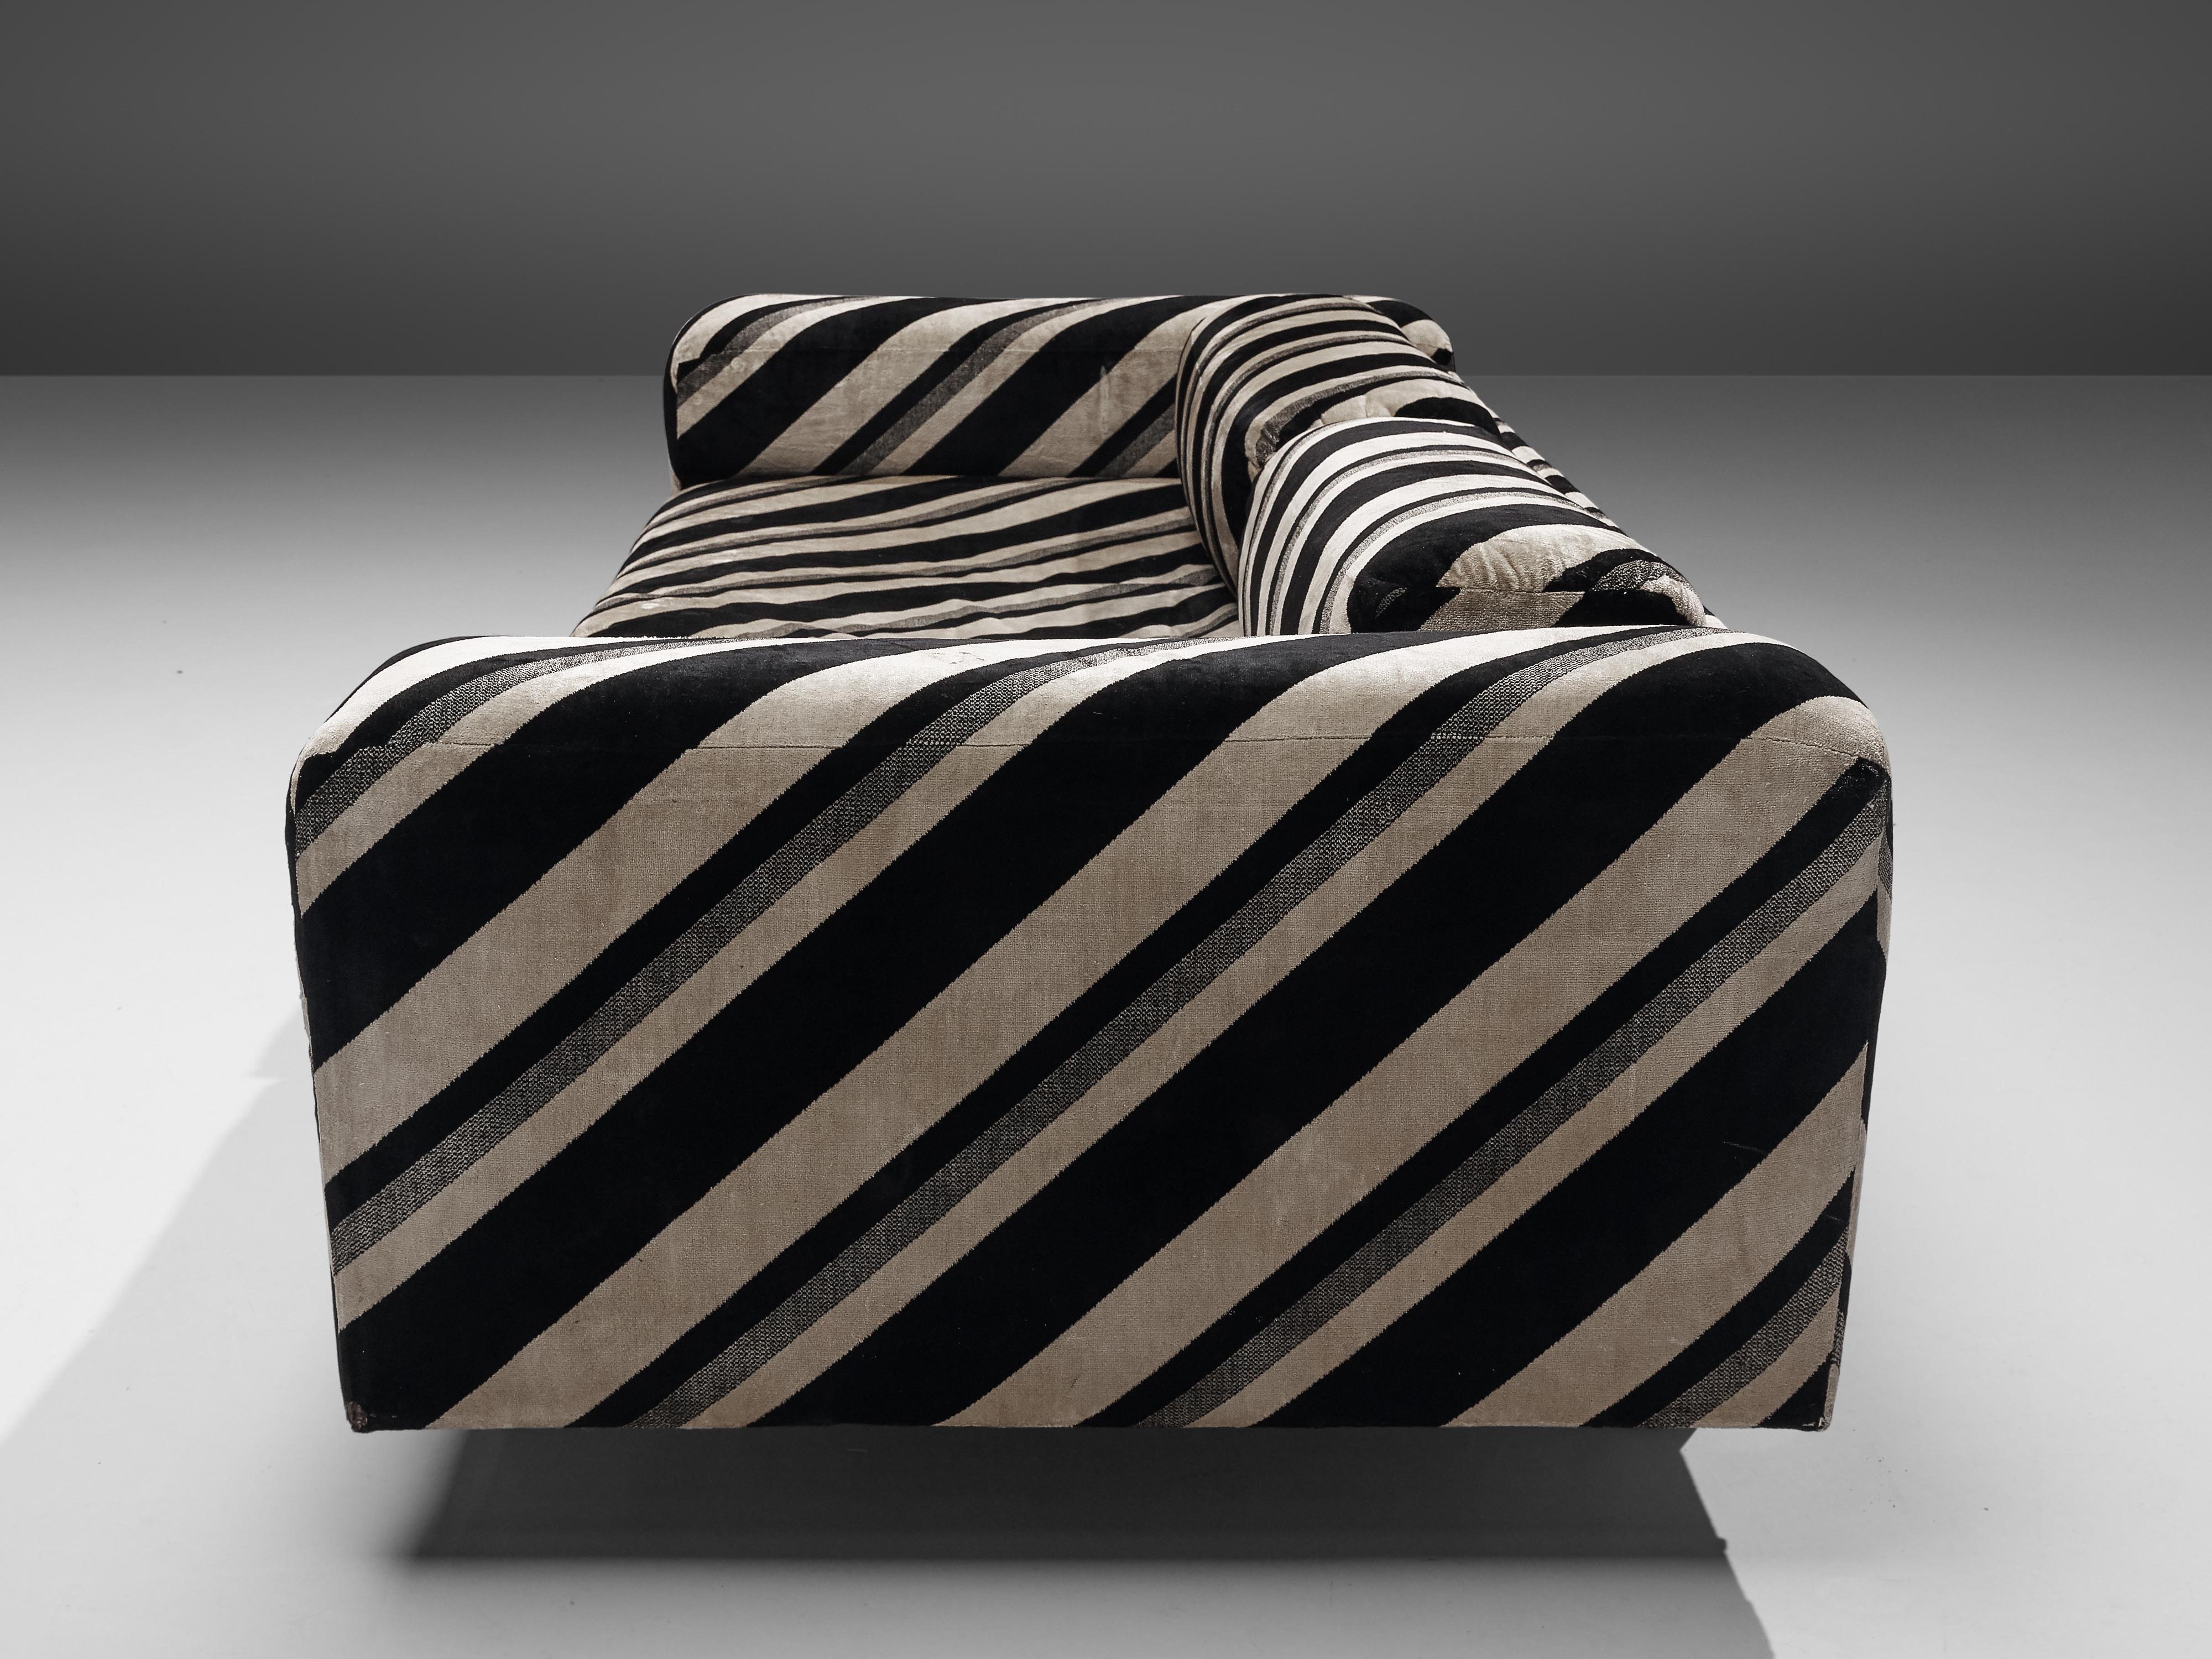 Howard Keith Grand 'Diplomat' Sofa in Original Striped Fabric 2